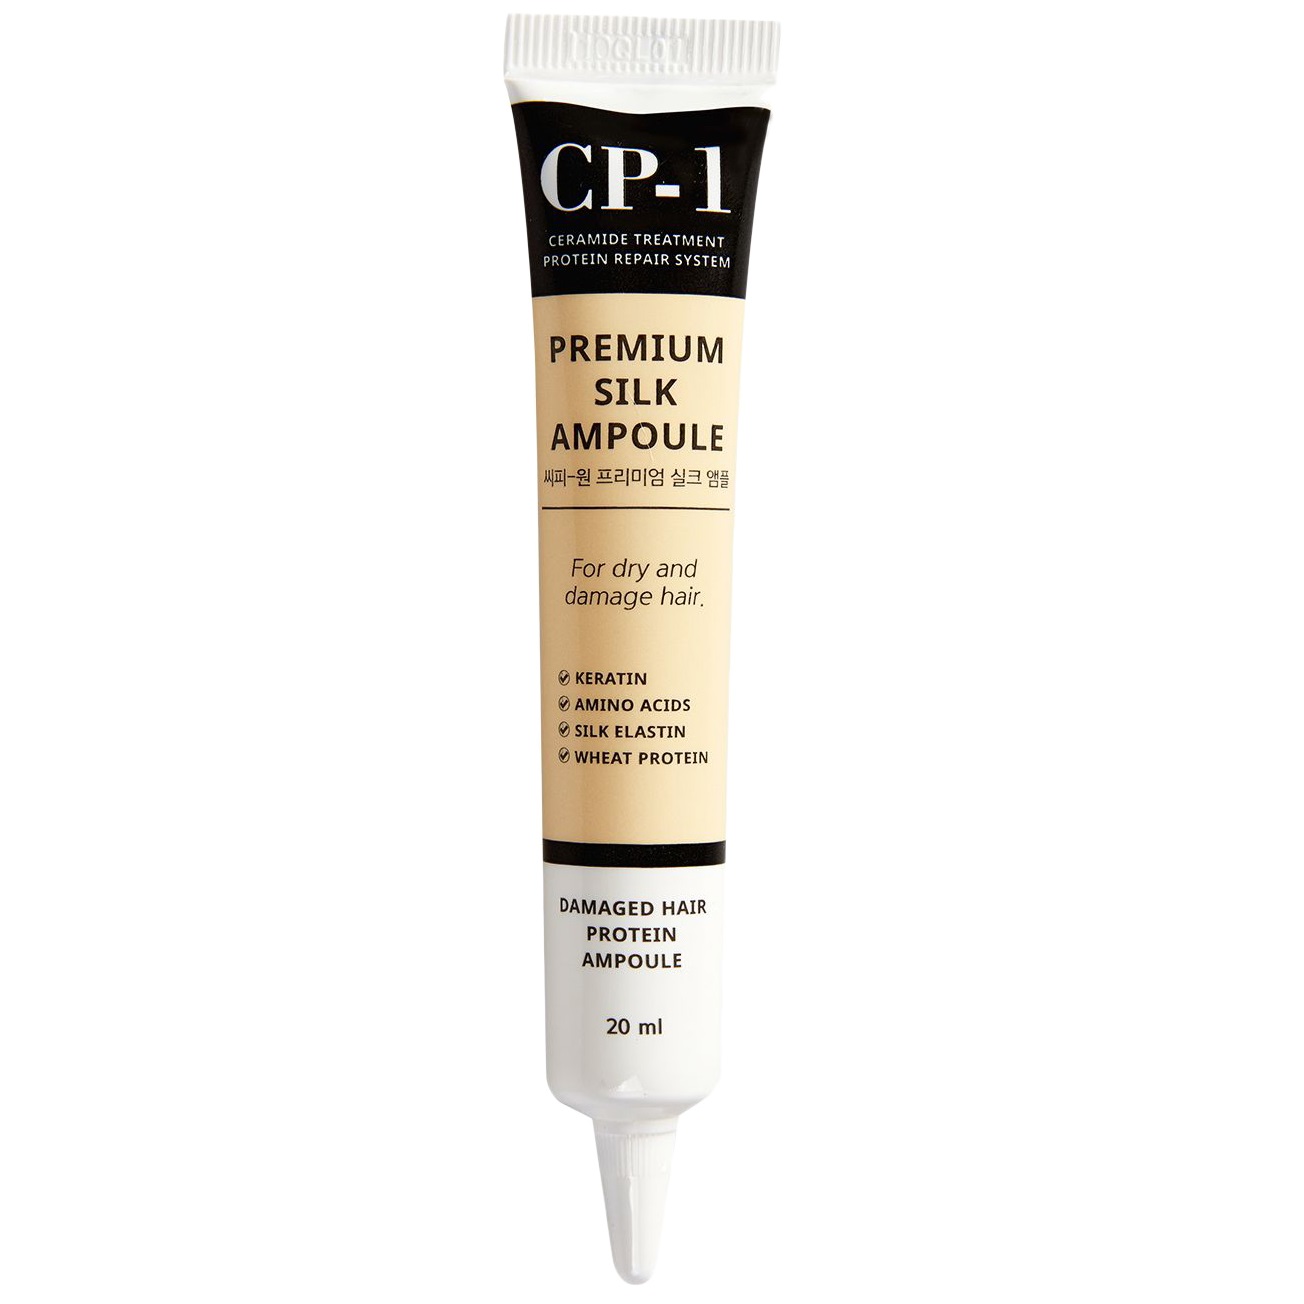 Сыворотка для волос Esthetic House CP-1 Premium Silk Ampoule с протеинами шелка, 20 мл - фото 1